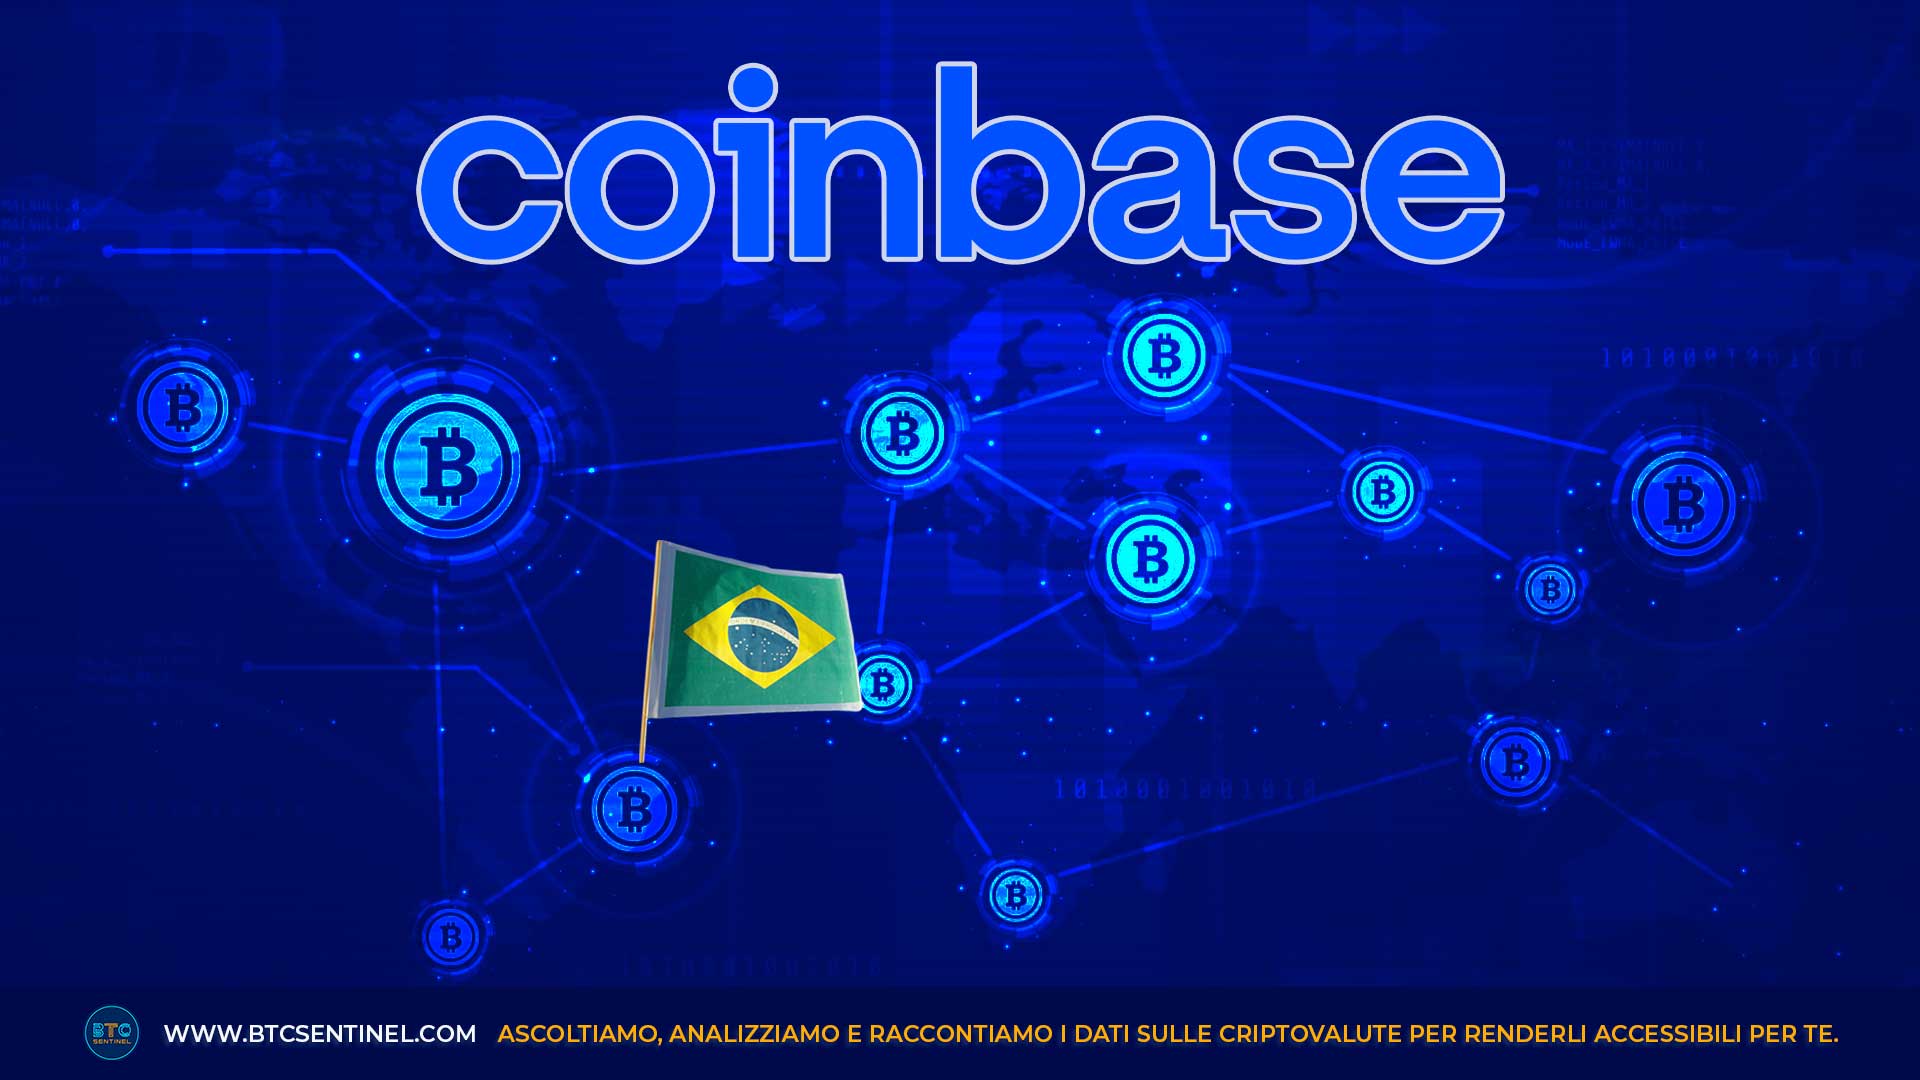 Coinbase sbarca in Brasile: annuncio e azioni +12%